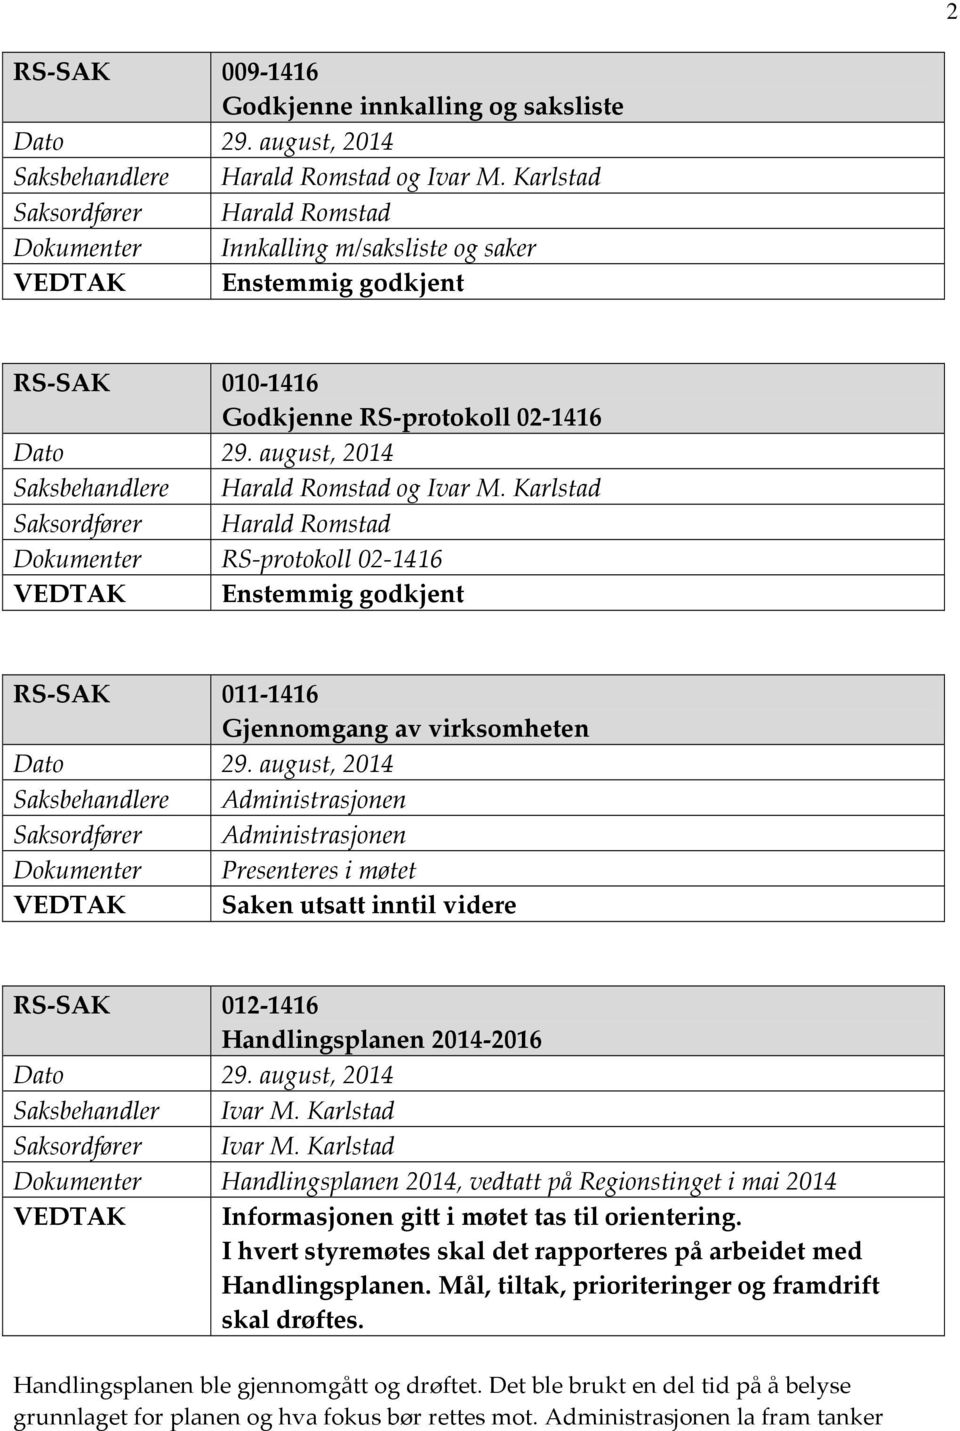 Karlstad Saksordfører Harald Romstad Dokumenter RS-protokoll 02-1416 VEDTAK Enstemmig godkjent RS-SAK 011-1416 Gjennomgang av virksomheten Saksbehandlere Administrasjonen Saksordfører